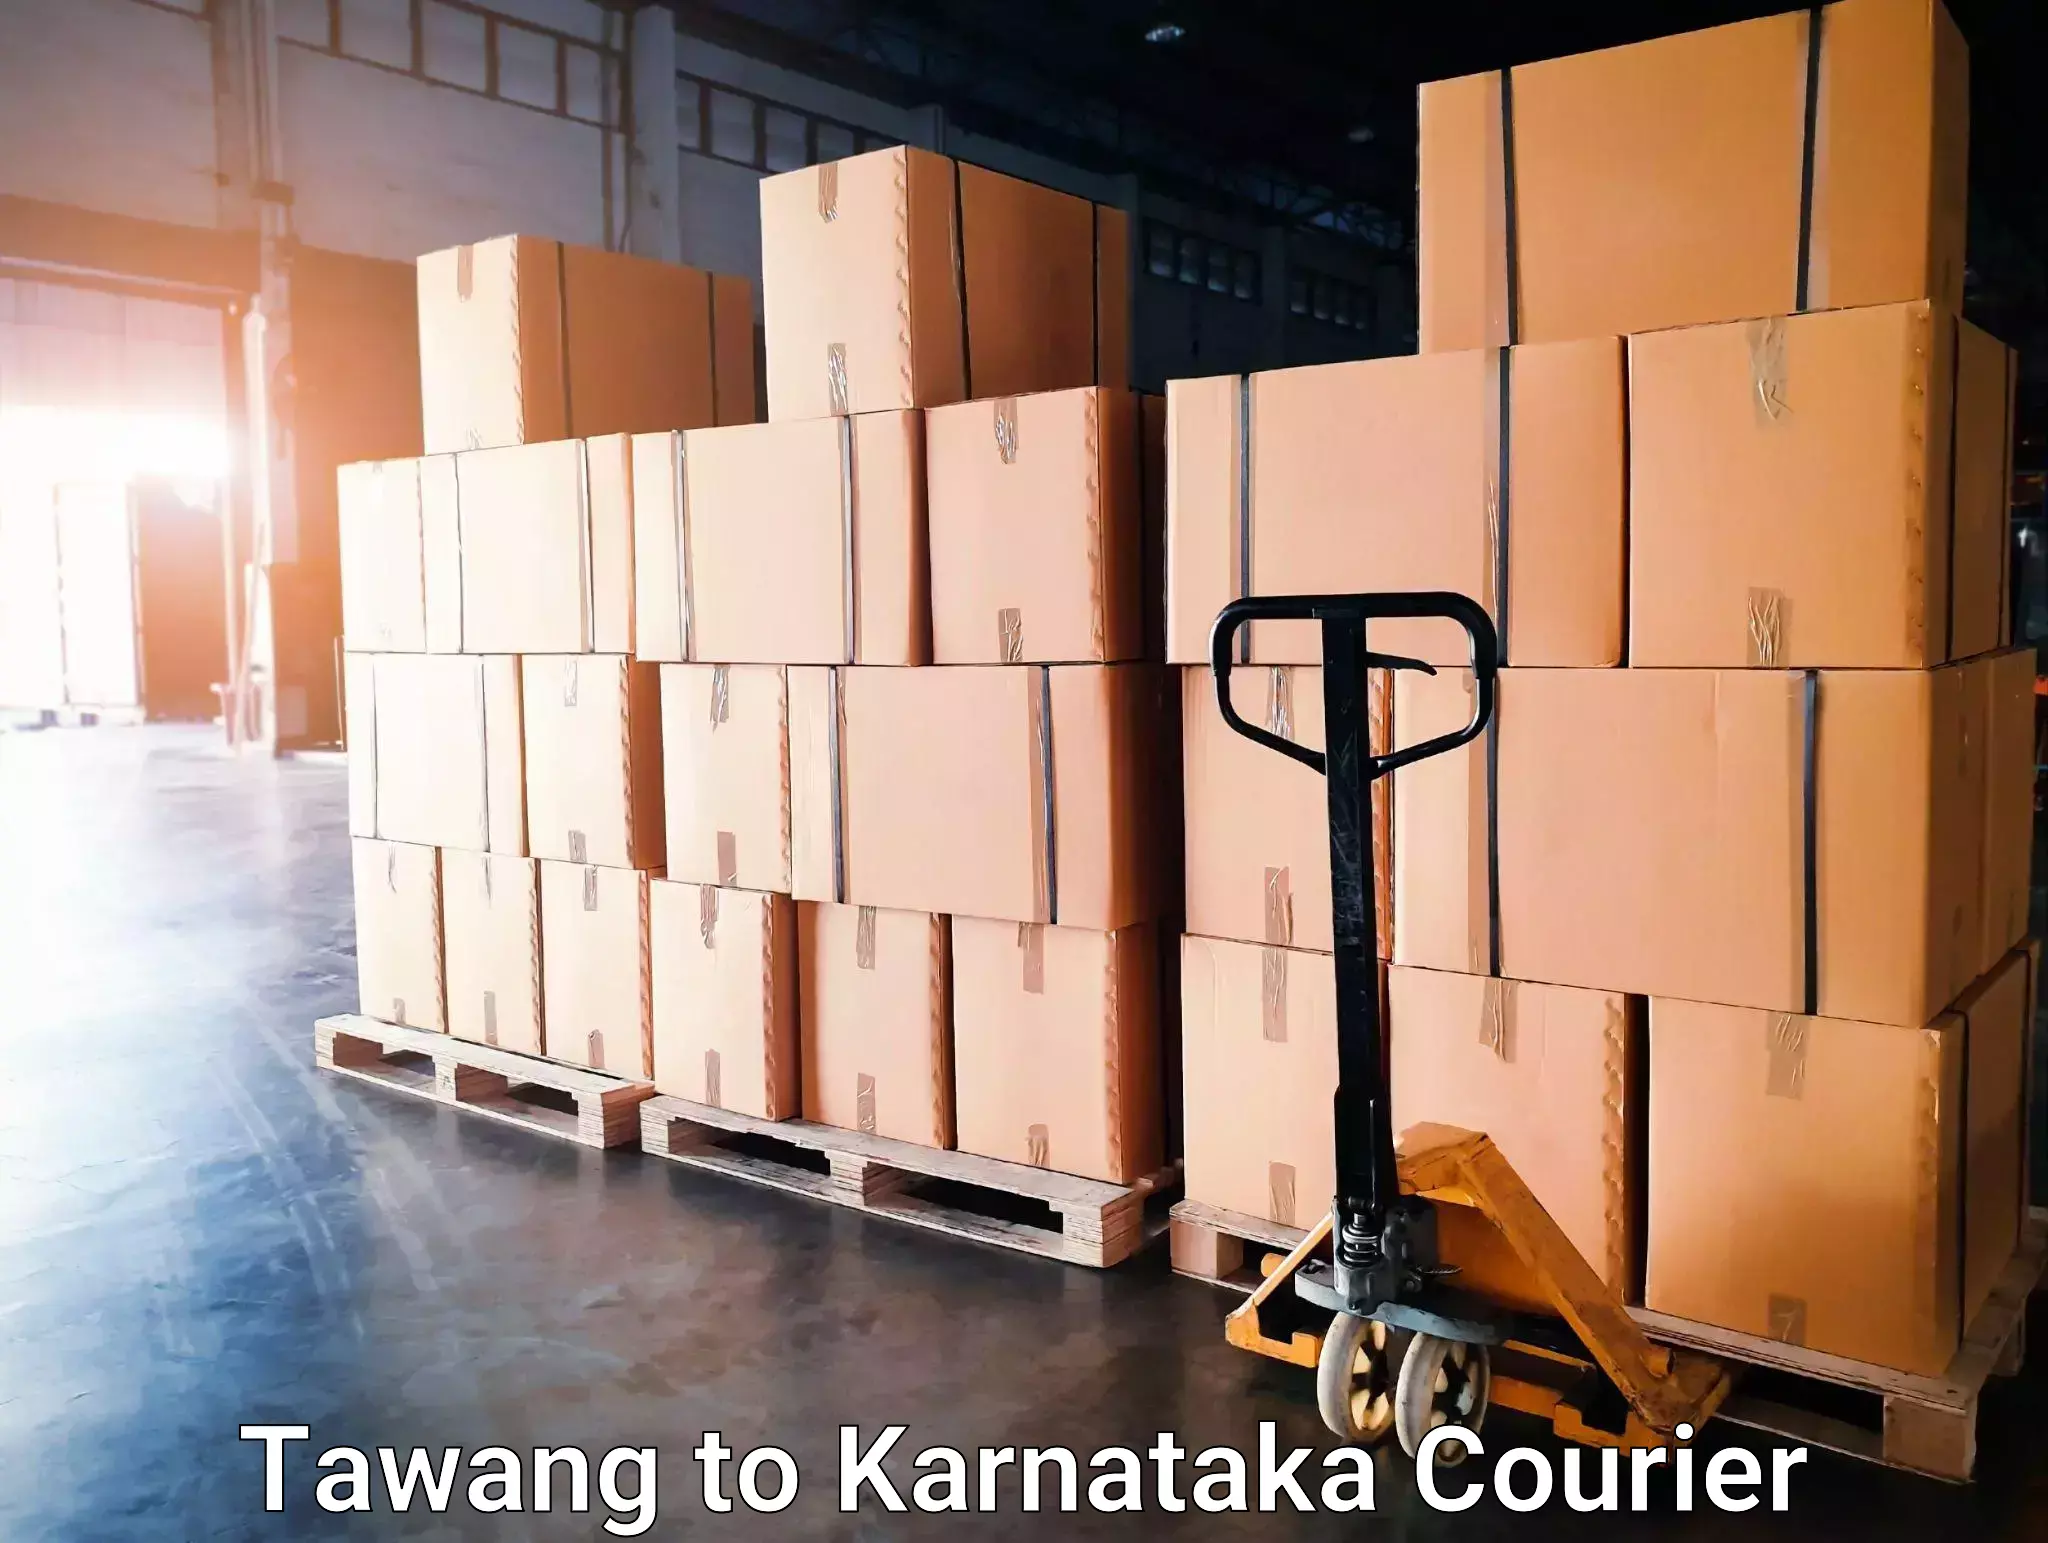 Next-day delivery options Tawang to Sagara